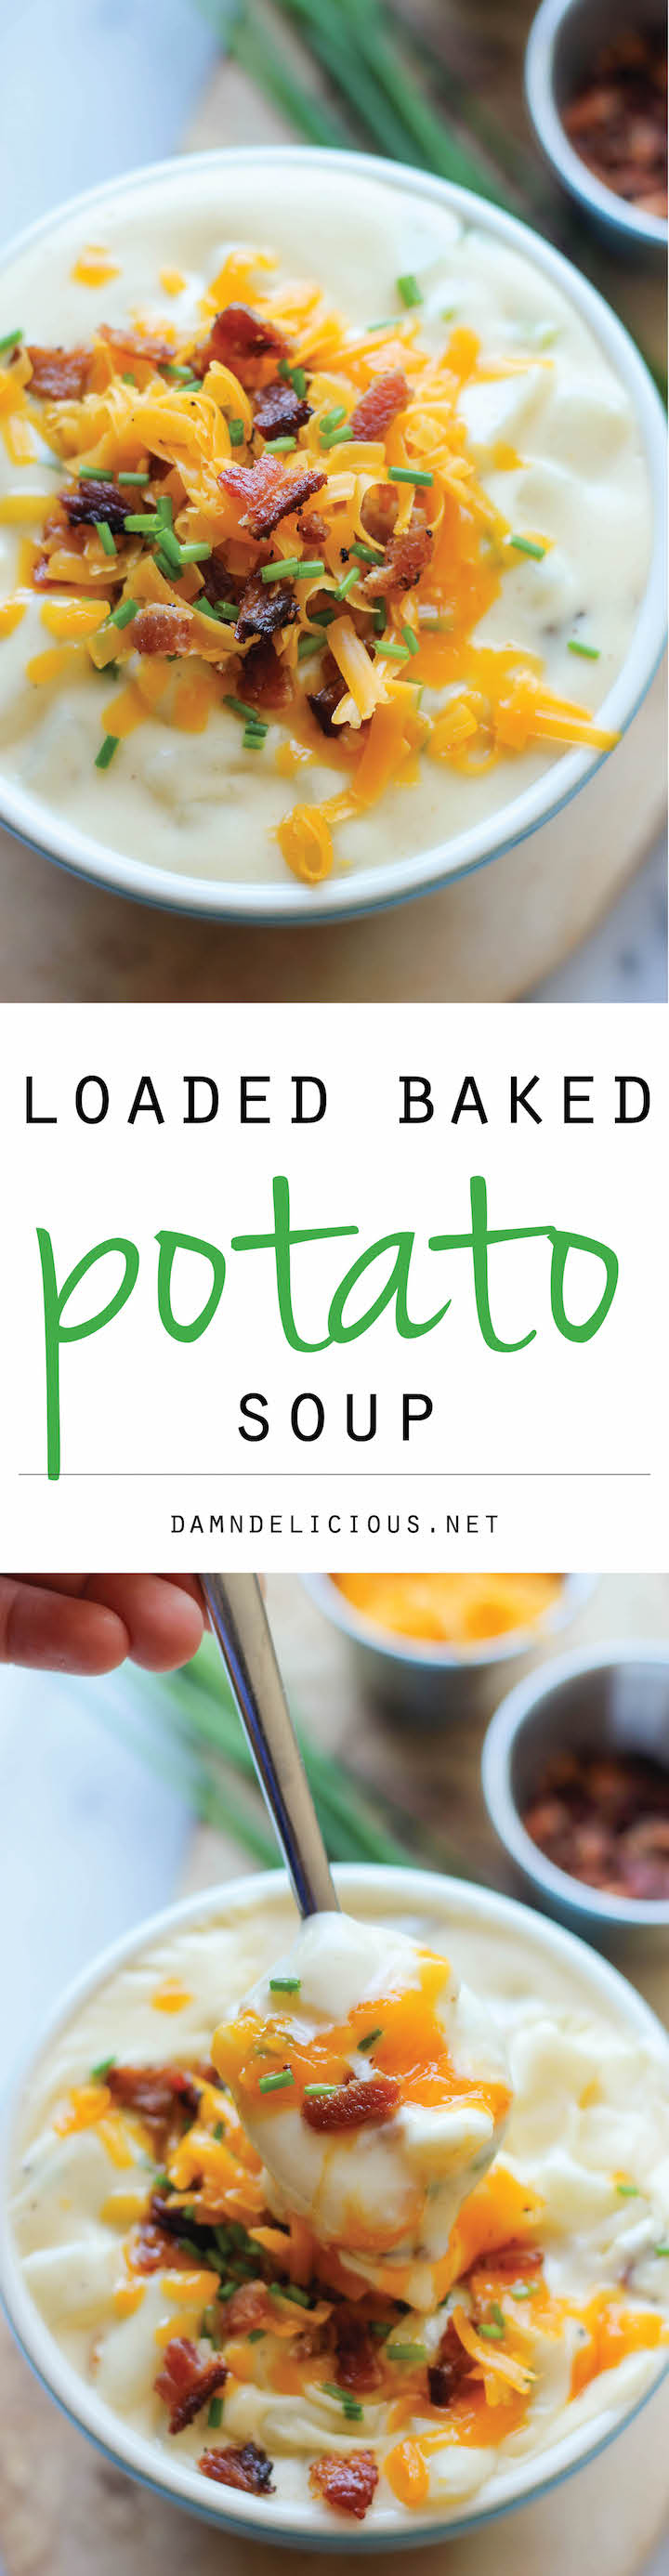 Loaded Baked Potato Soup Damn Delicious